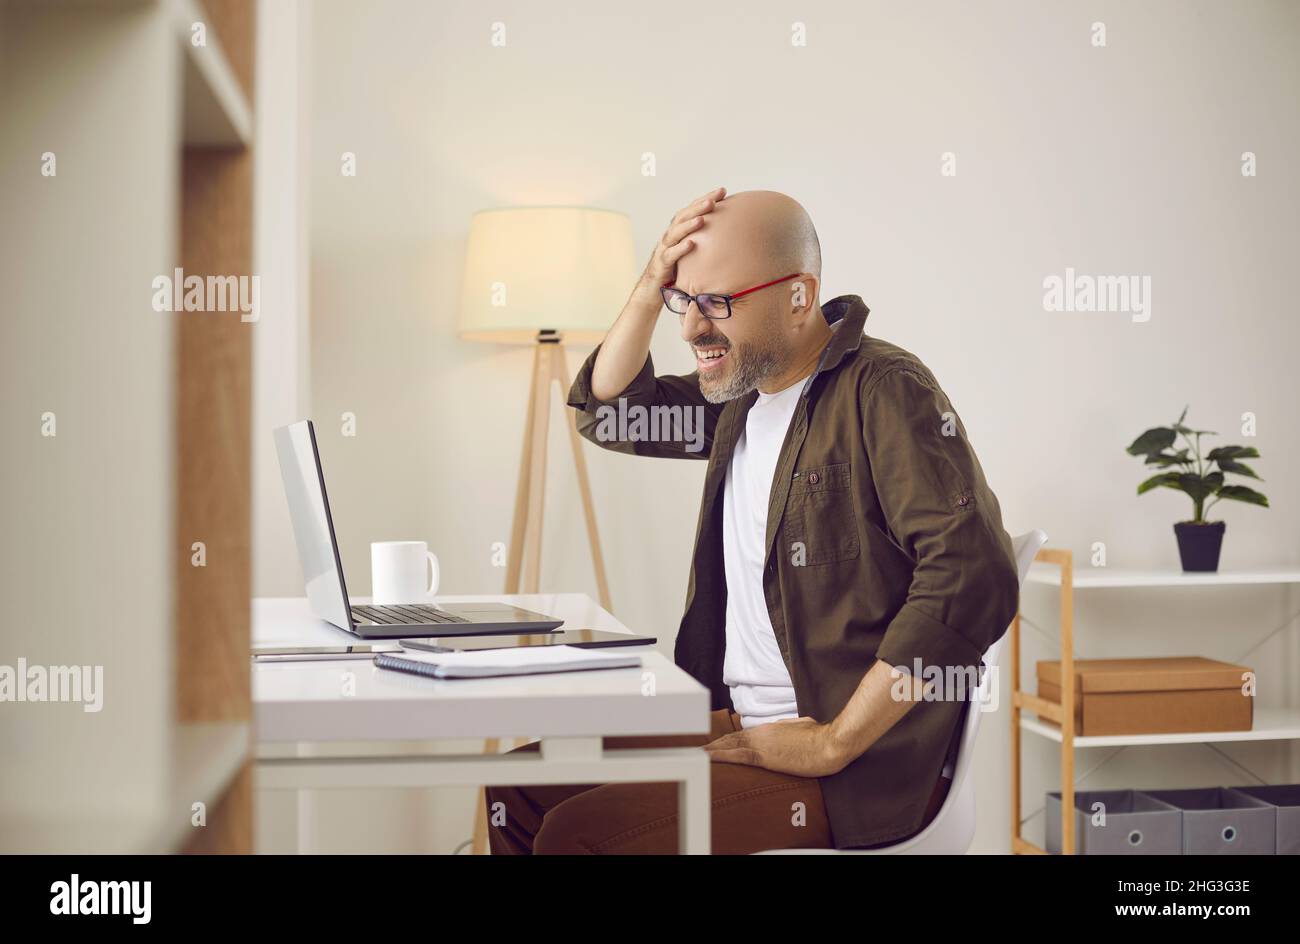 Ein Mann, der beim Arbeiten an einem Laptop Fehler macht oder etwas vergisst, knabscht sich ins Gesicht Stockfoto